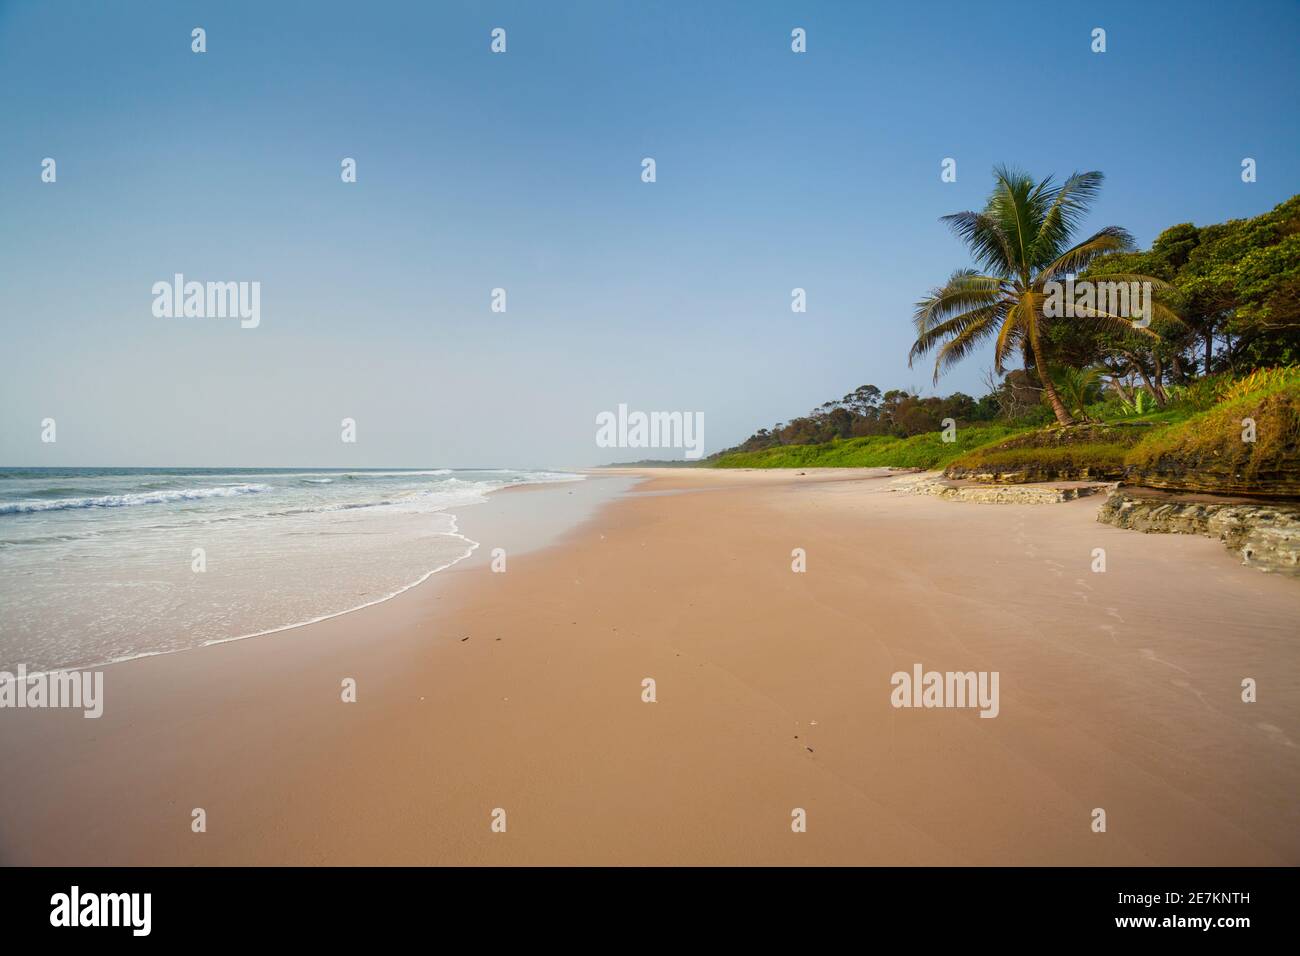 Plage de sable le long de la côte atlantique, près d'Omboue, Gabon, Afrique centrale. Banque D'Images